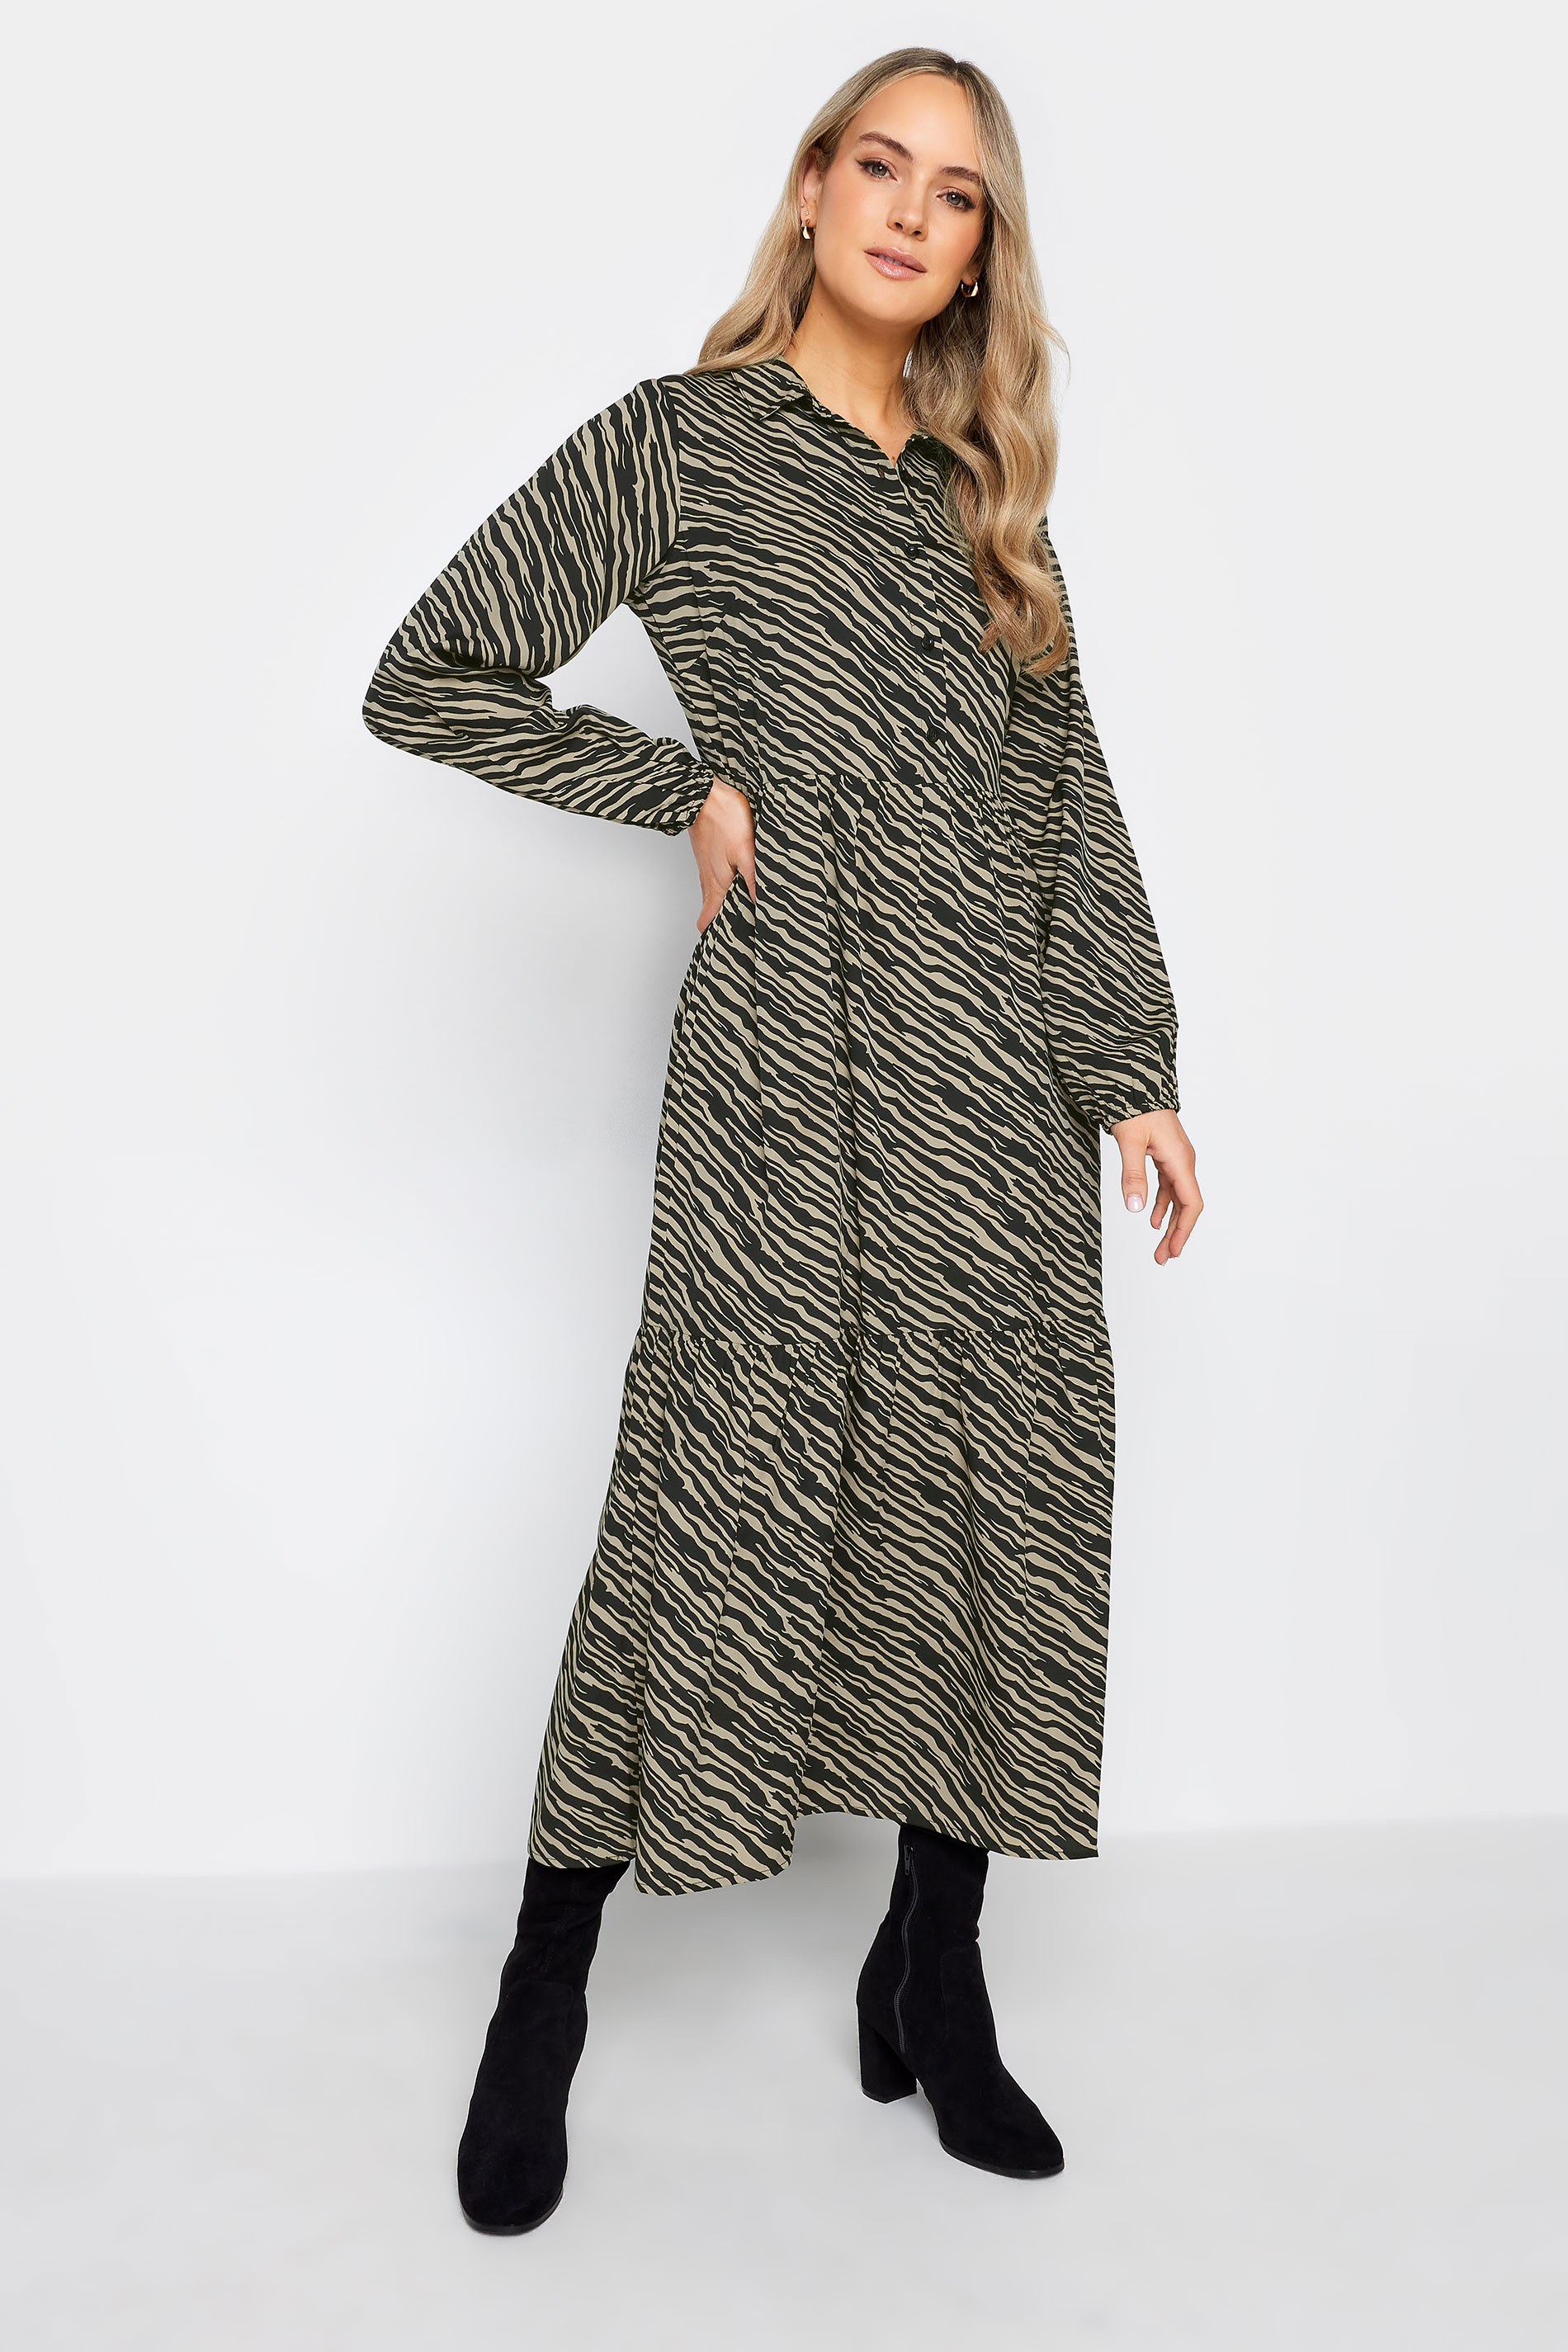 LTS Tall Black Zebra Print Tiered Maxi Dress | Long Tall Sally 2